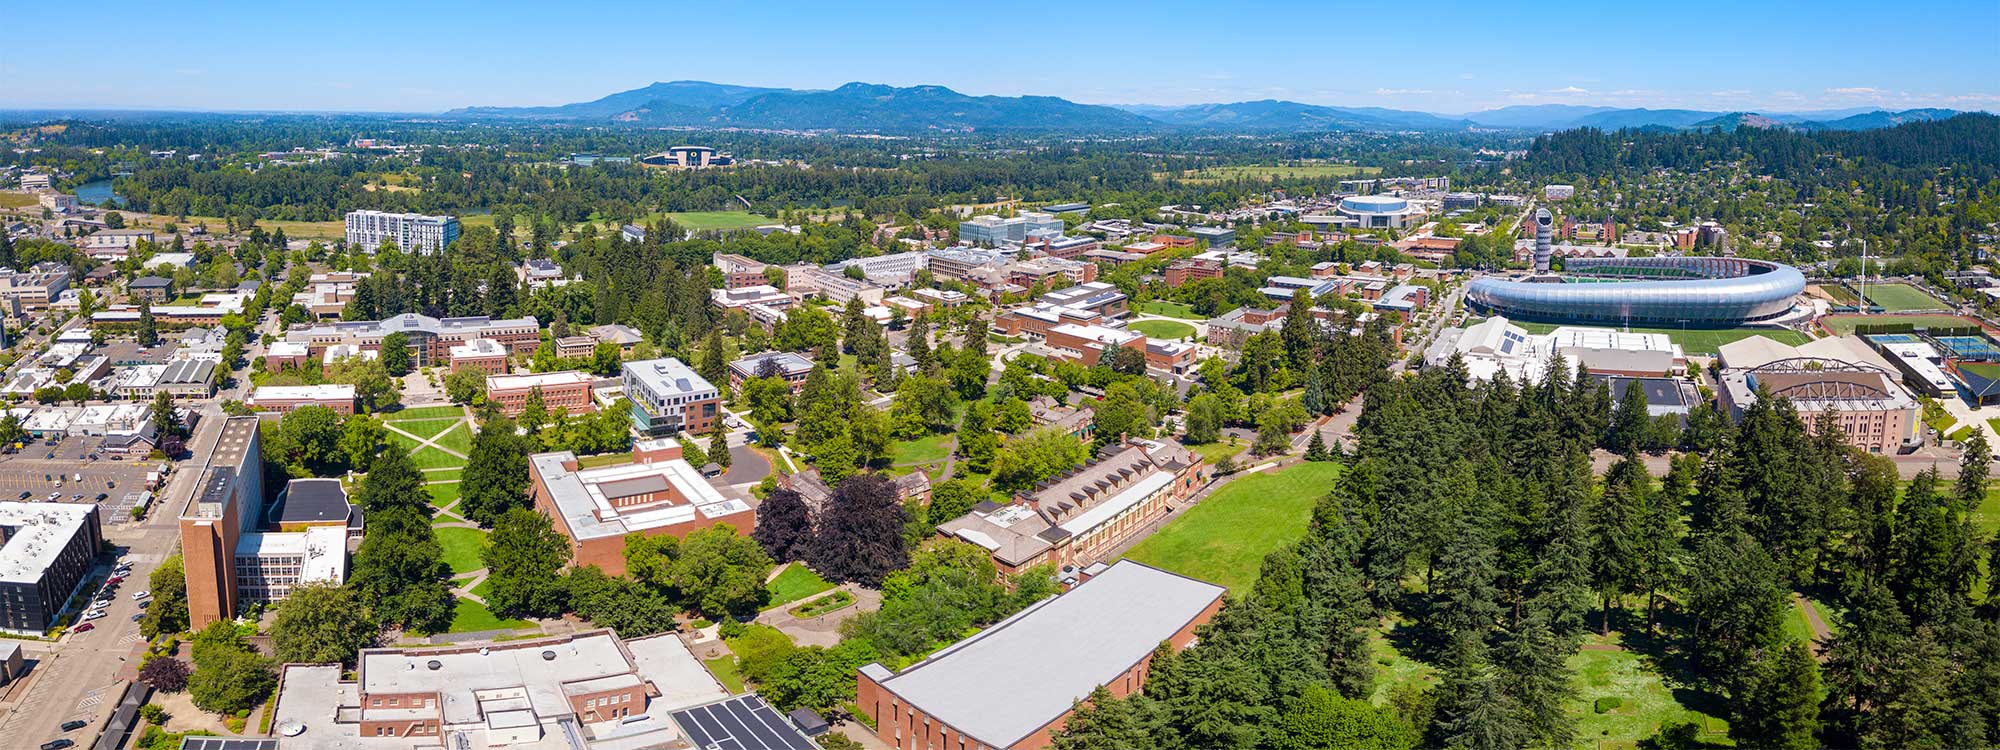 Aerial panoramic view of campus